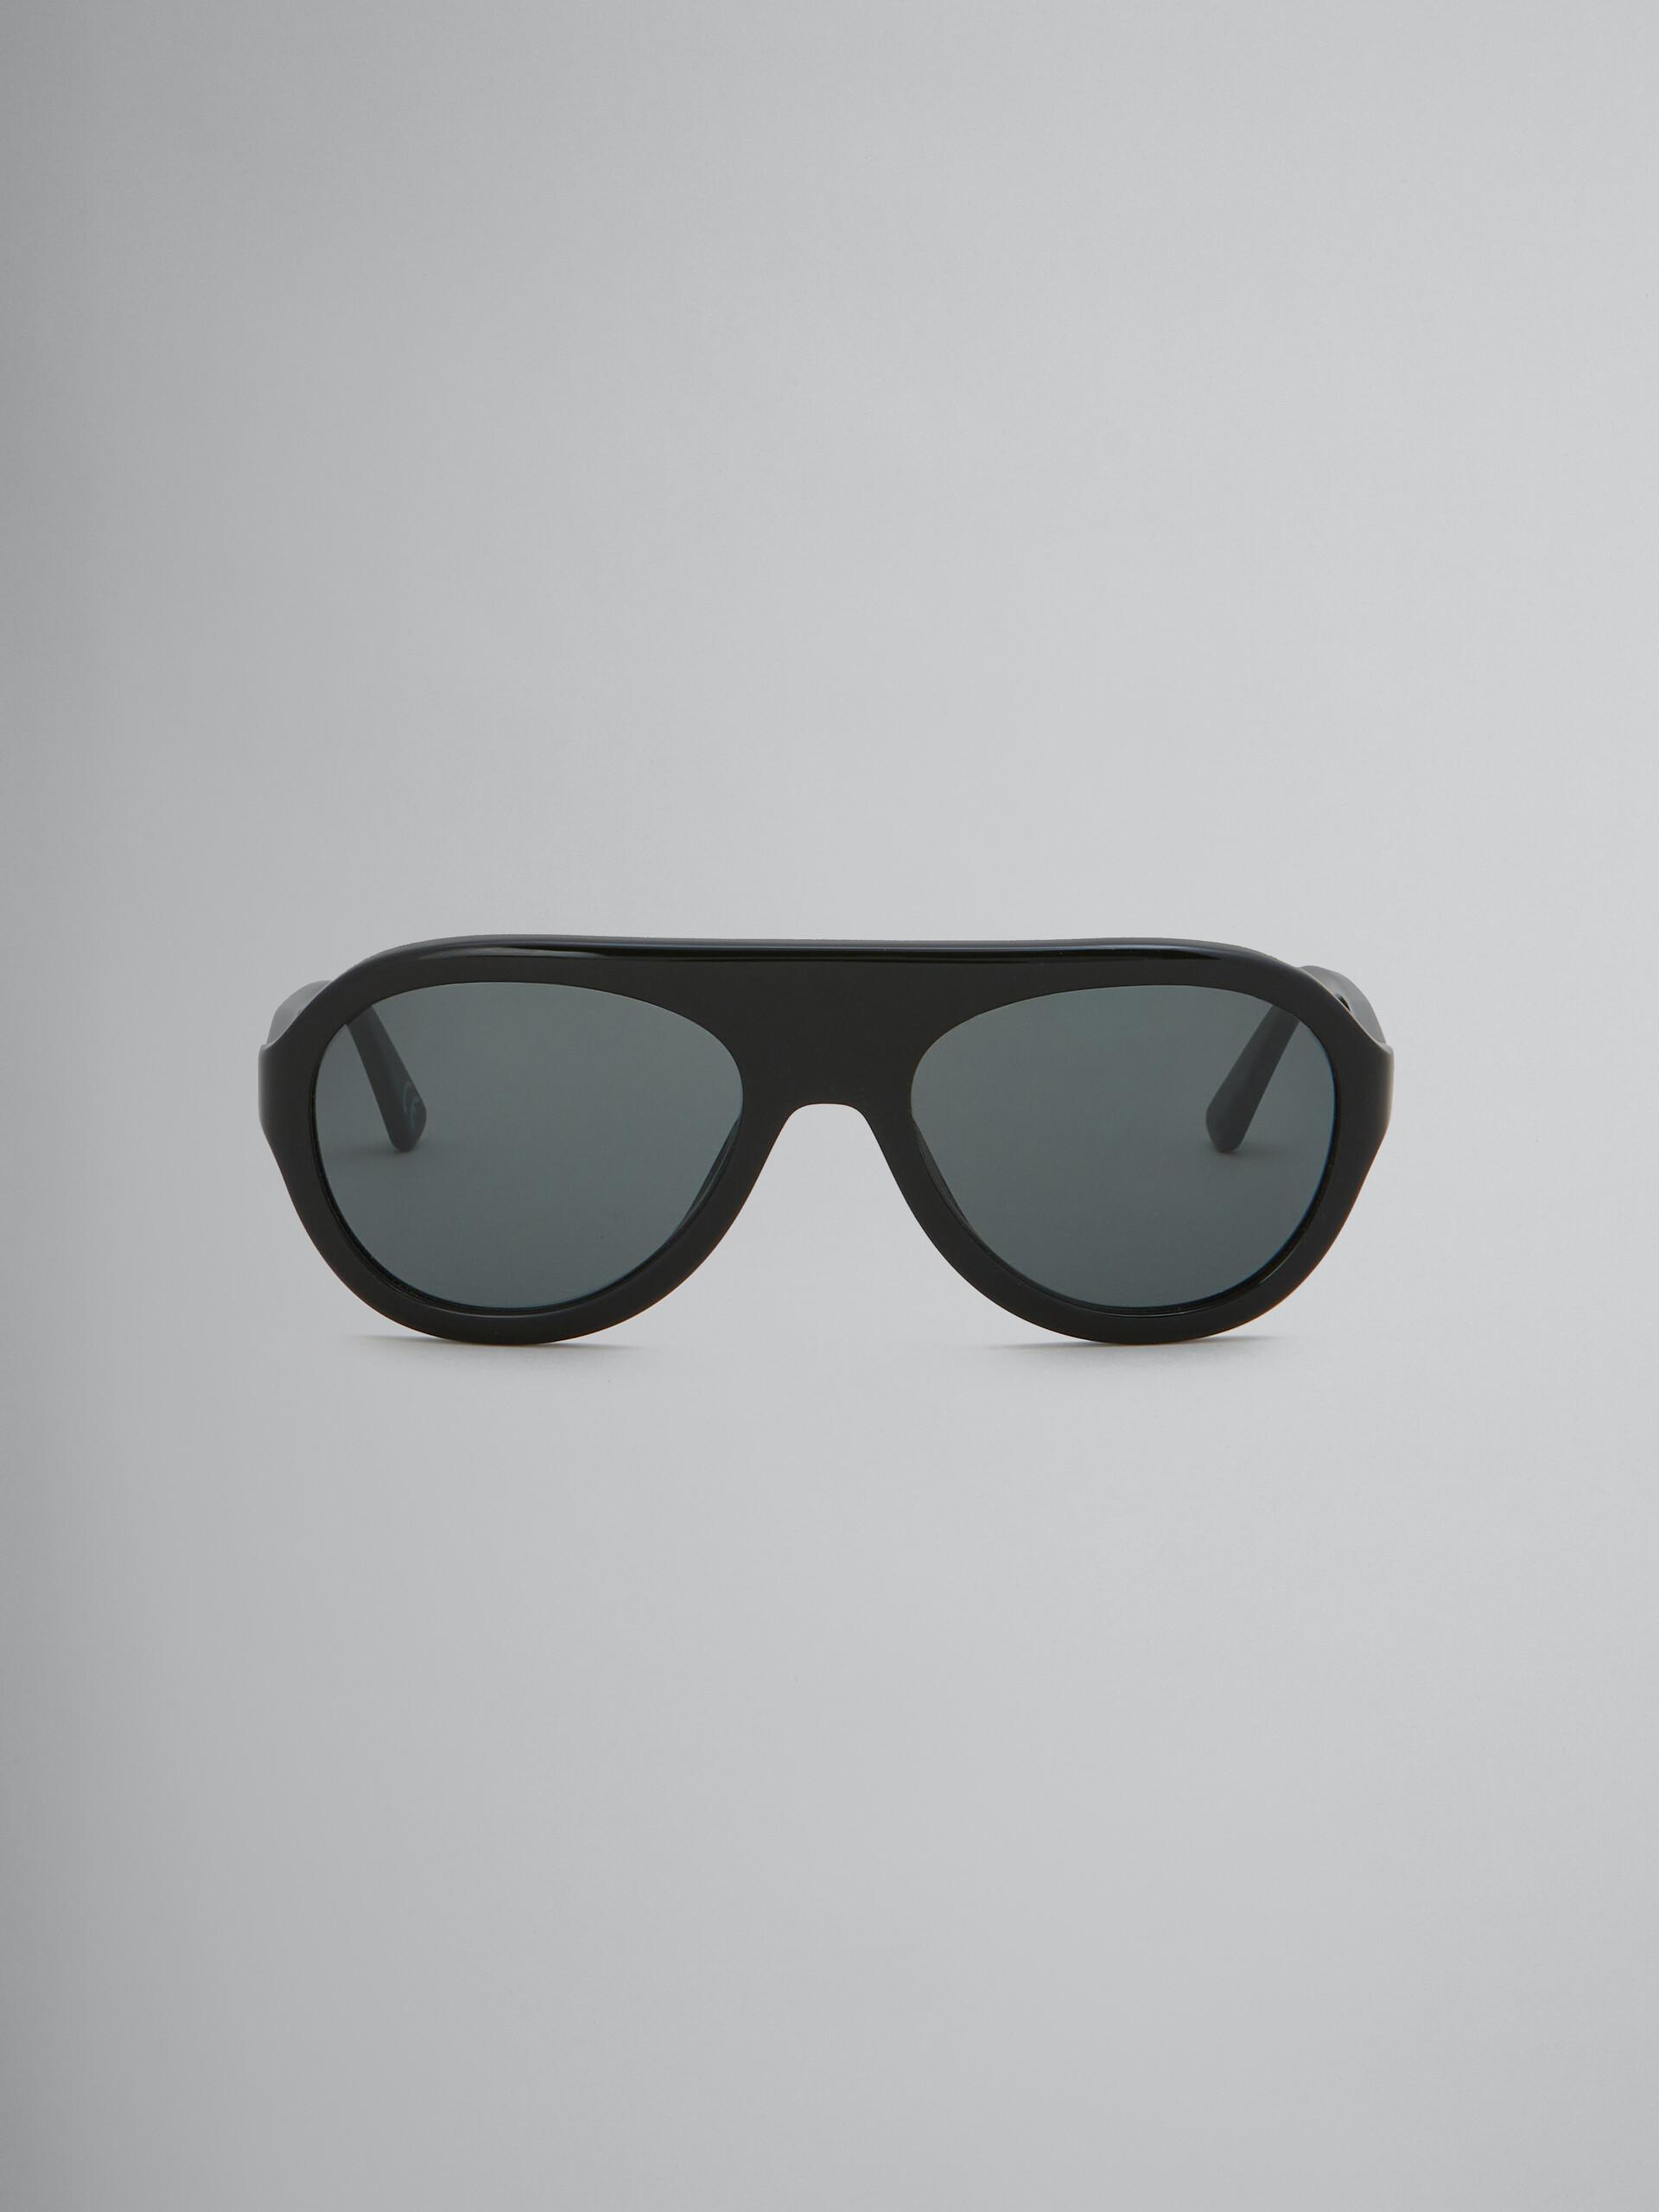 Occhiali Mount Toc aviator in acetato nero - Occhiali da sole - Image 1